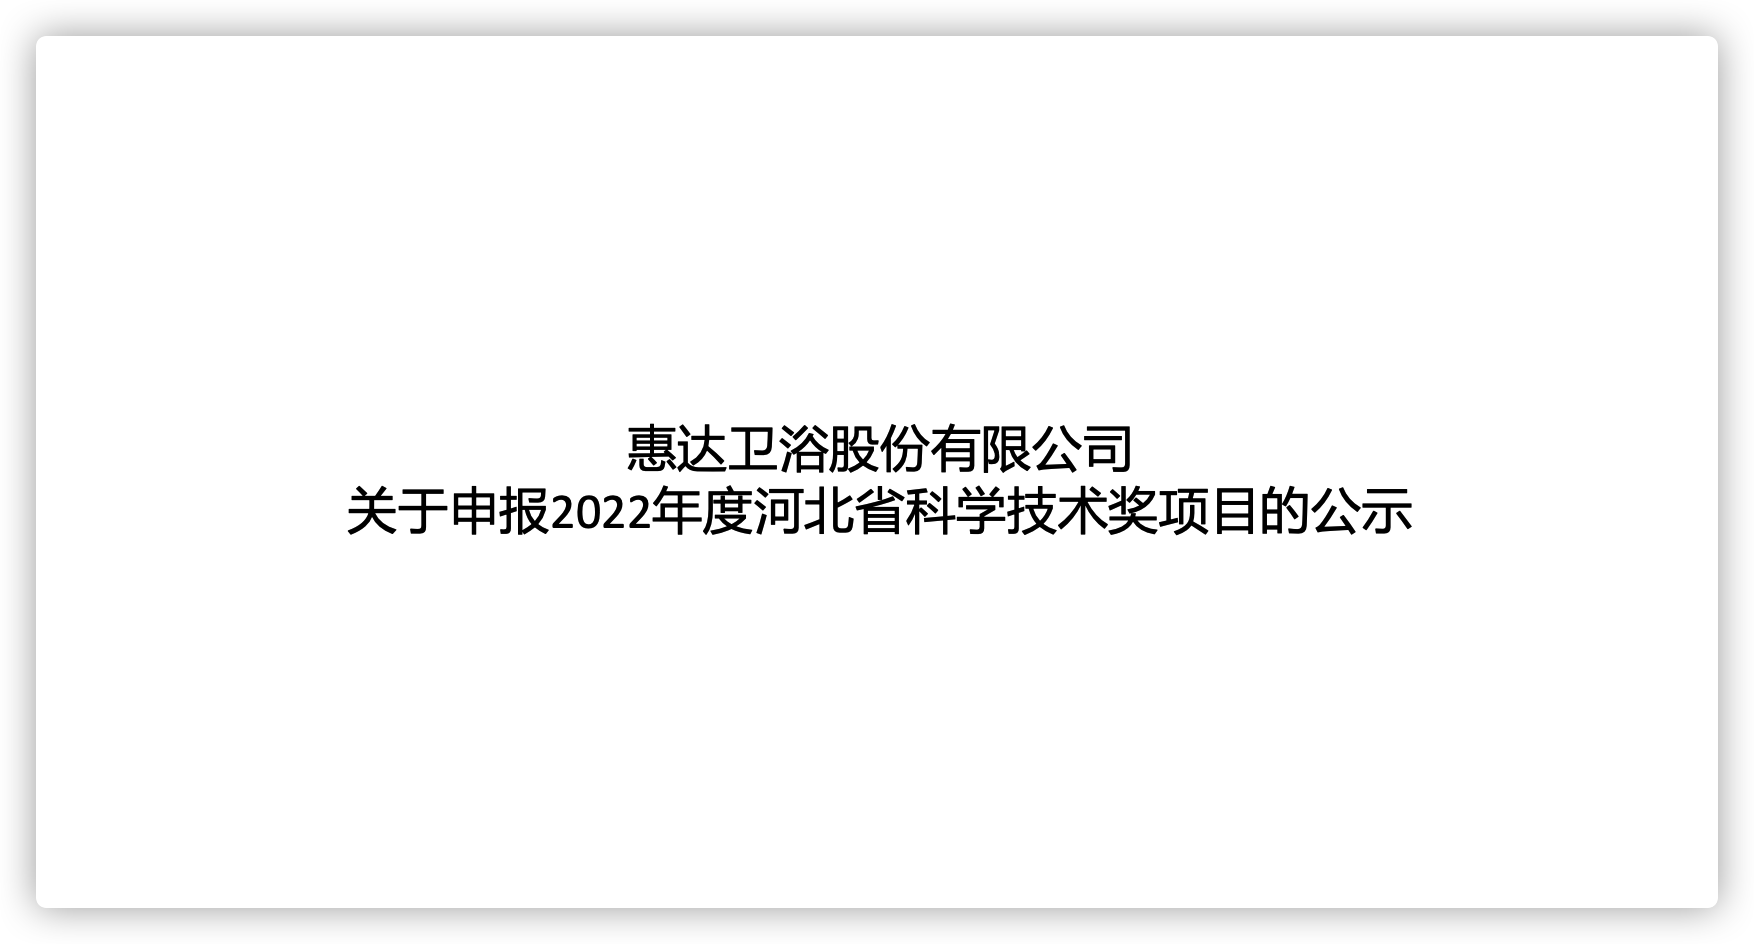 6686体育
股份有限公司关于申报2022年度河北省科学6686体育
奖项目的公示